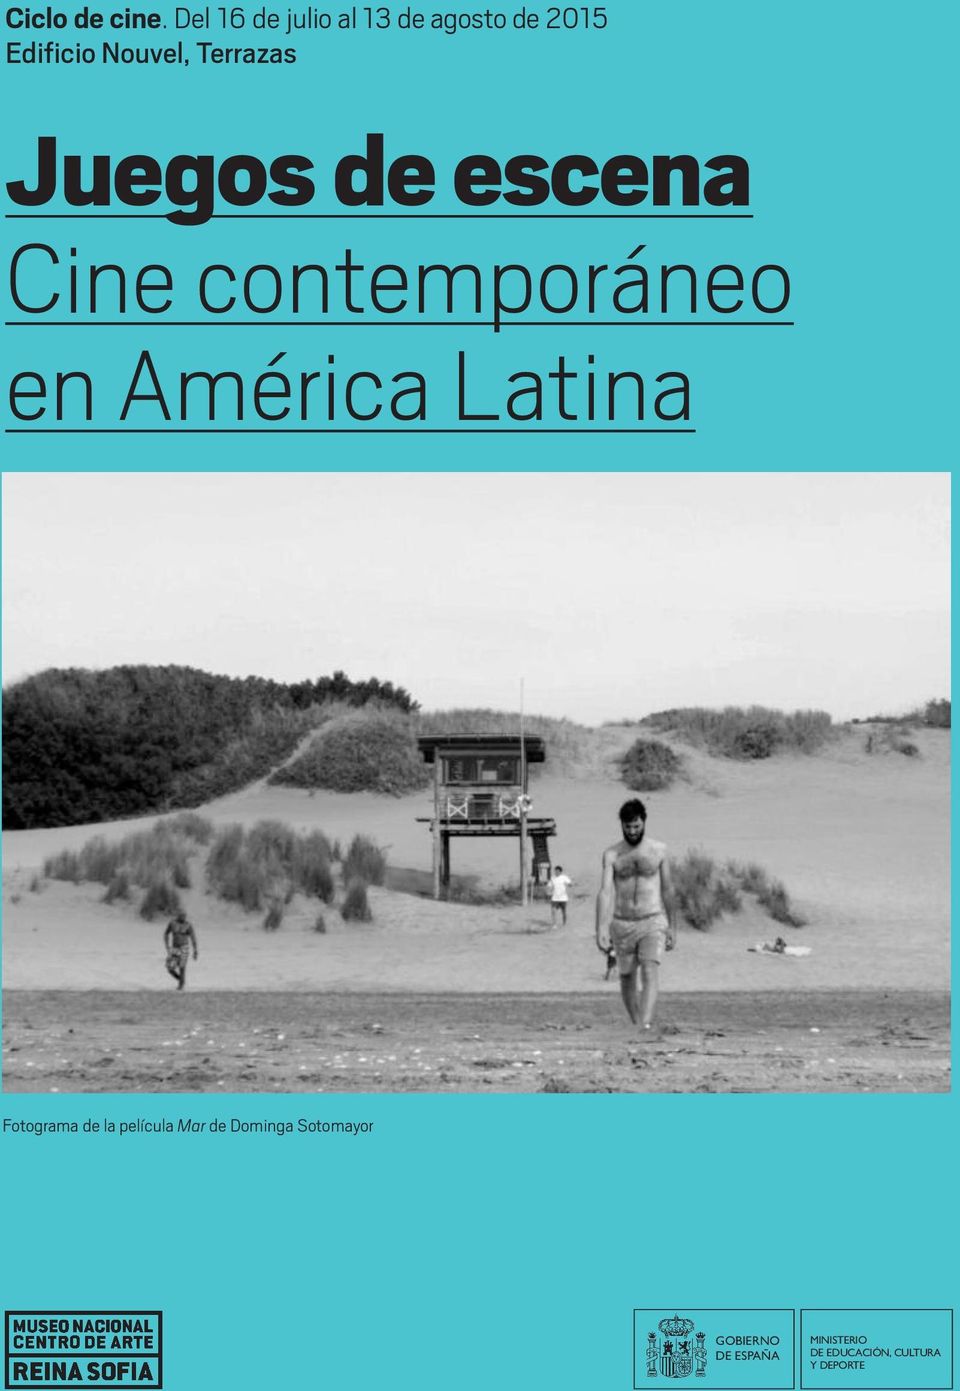 Terrazas Juegos de escena Cine contemporáneo en América